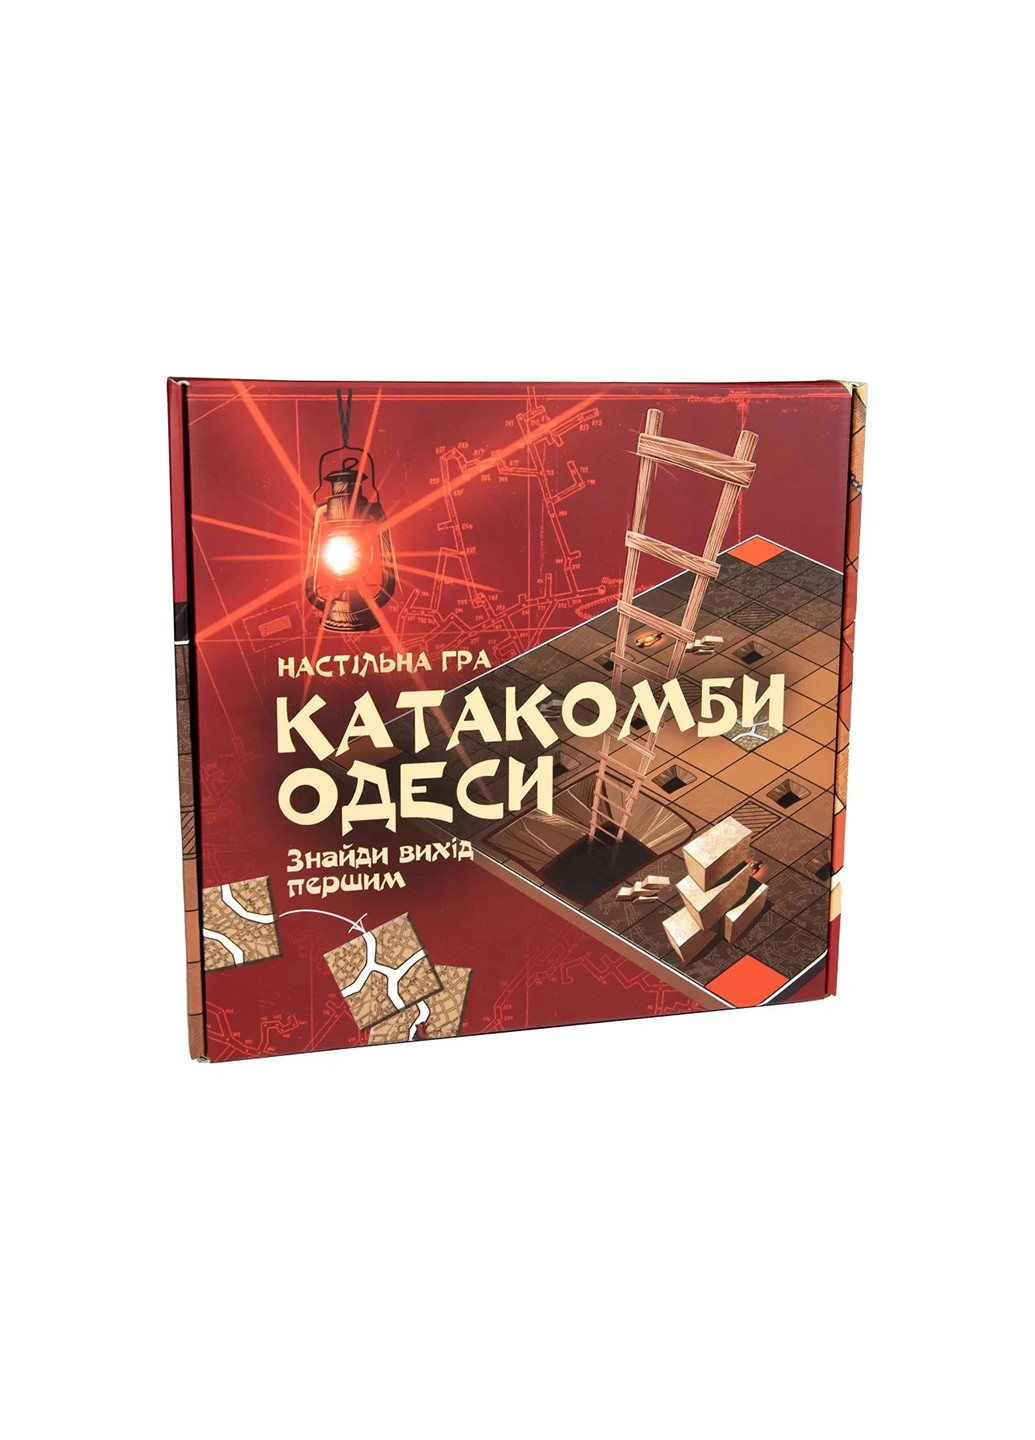 Настольная игра Катакомбы Одессы развлекательная 30285 Strateg (257134287)